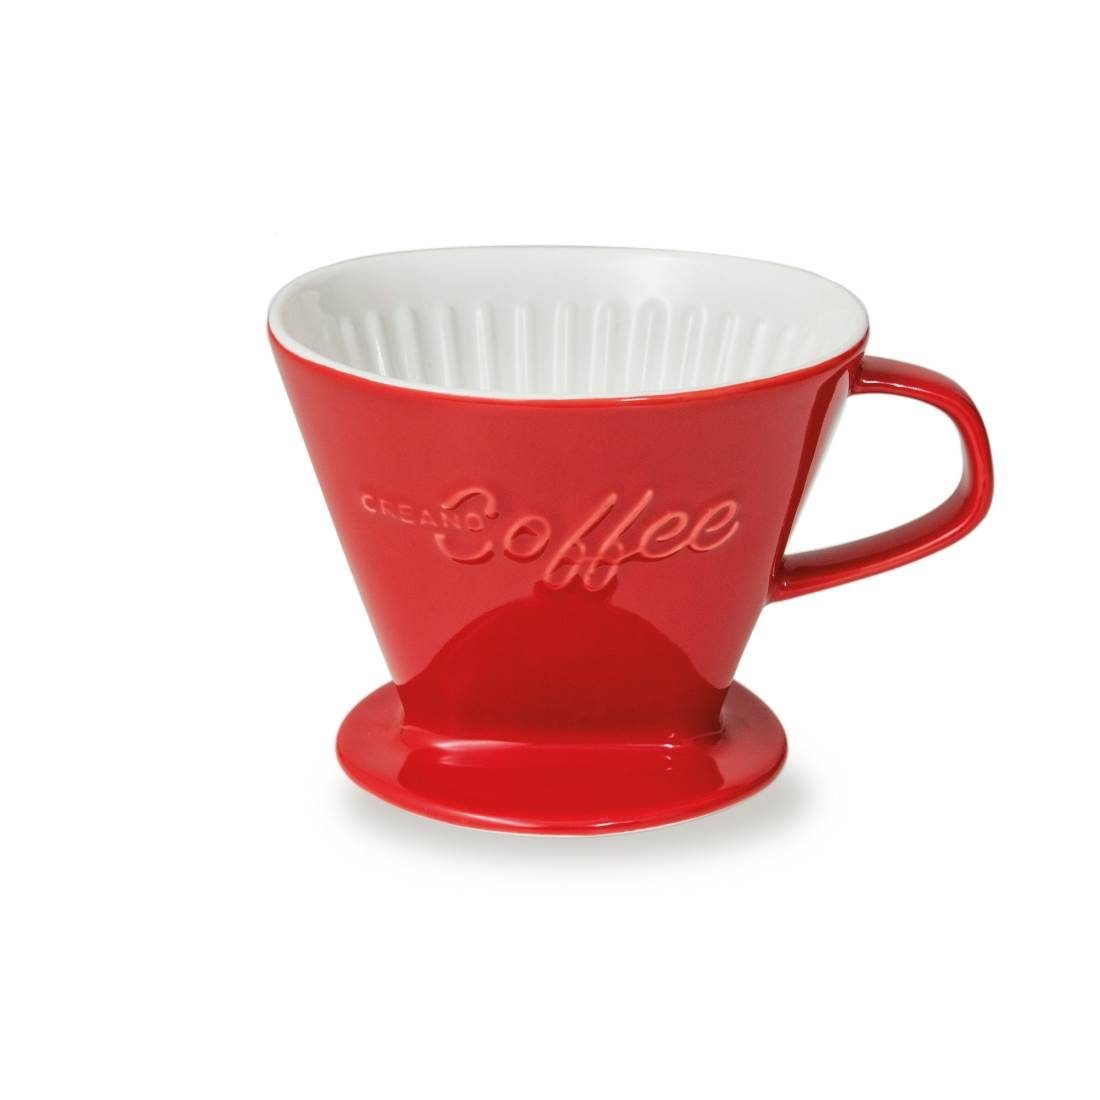 French Filtertüten, Kaffeefilter 4 Press 4 Porzellan Creano (rot), für Creano Manuell Filter Kanne Größe